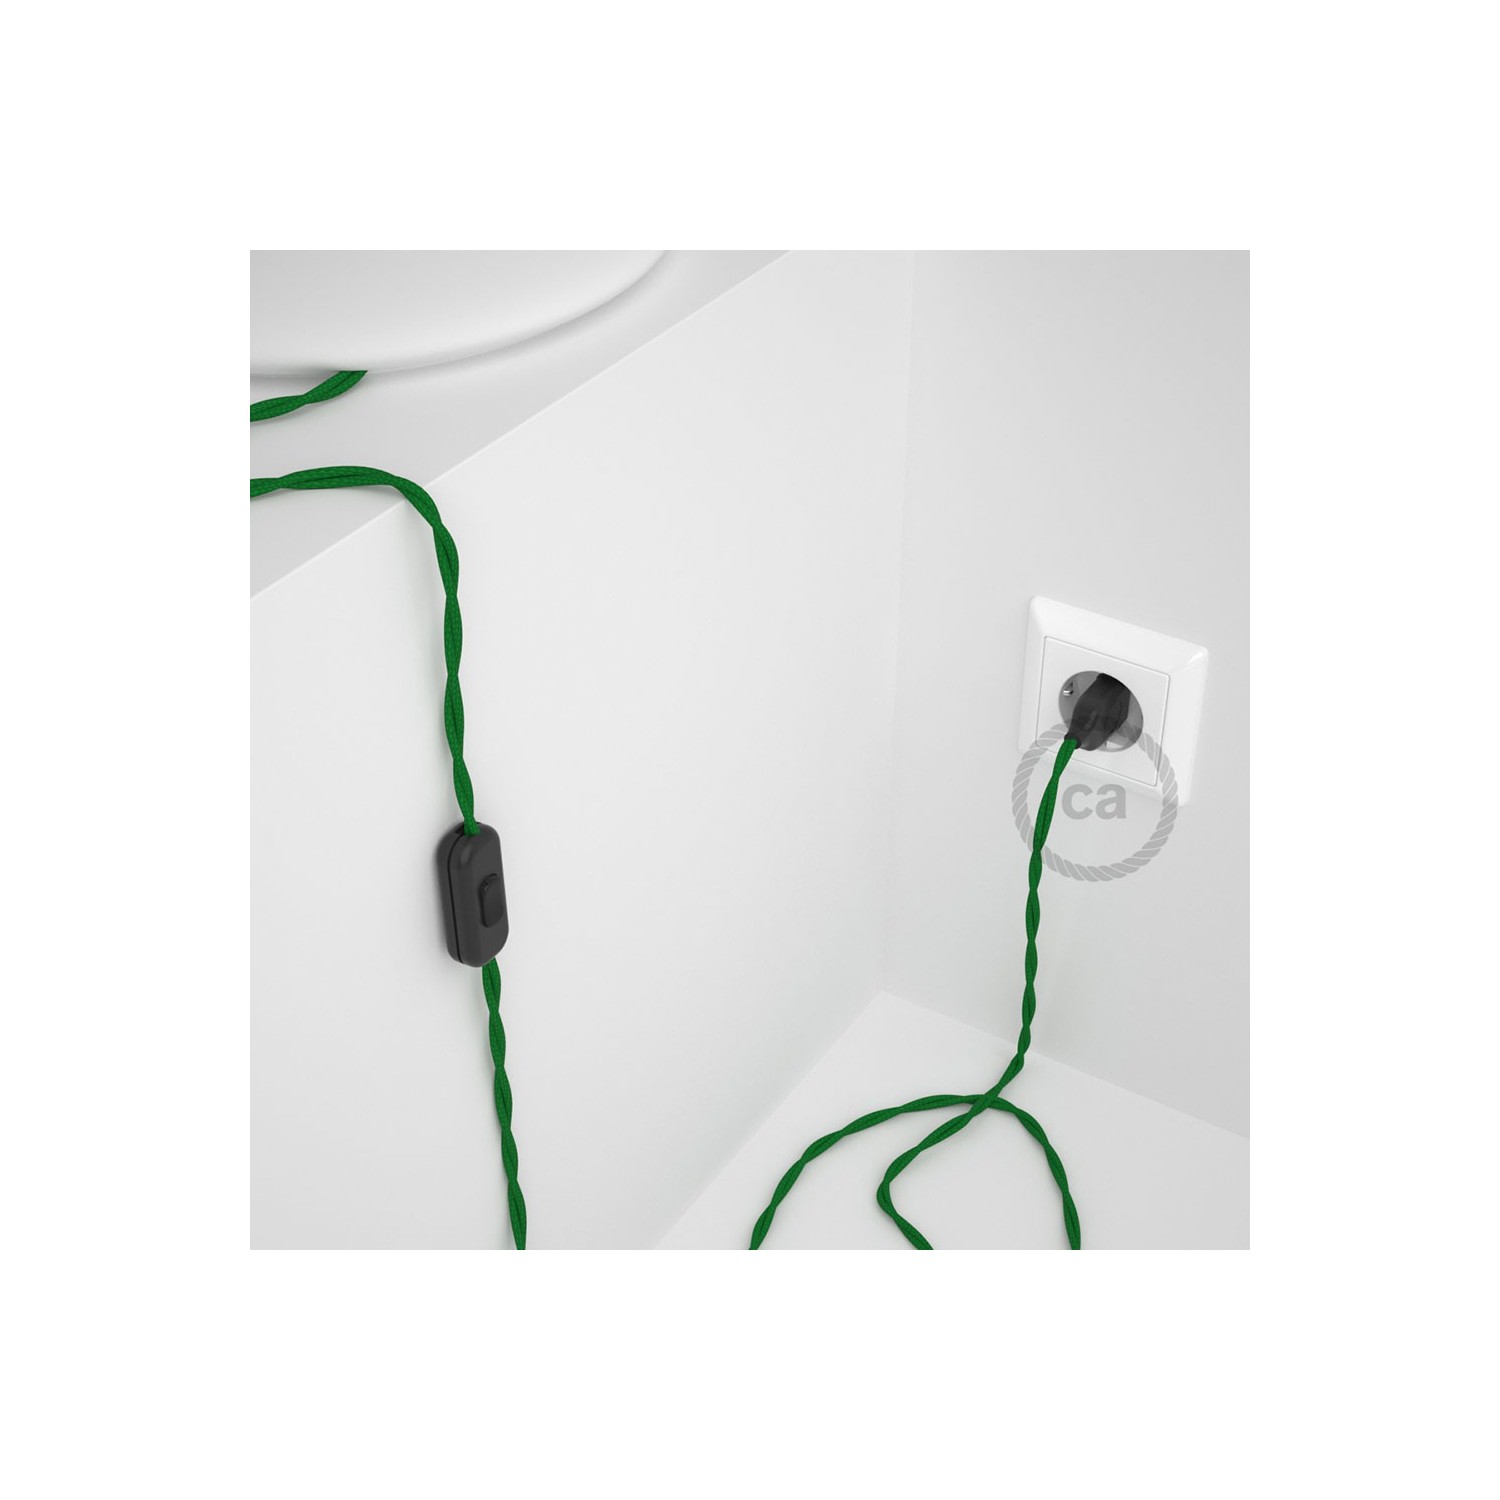 Cablaggio per lampada, cavo TM06 Effetto Seta Verde 1,80 m. Scegli il colore dell'interruttore e della spina.